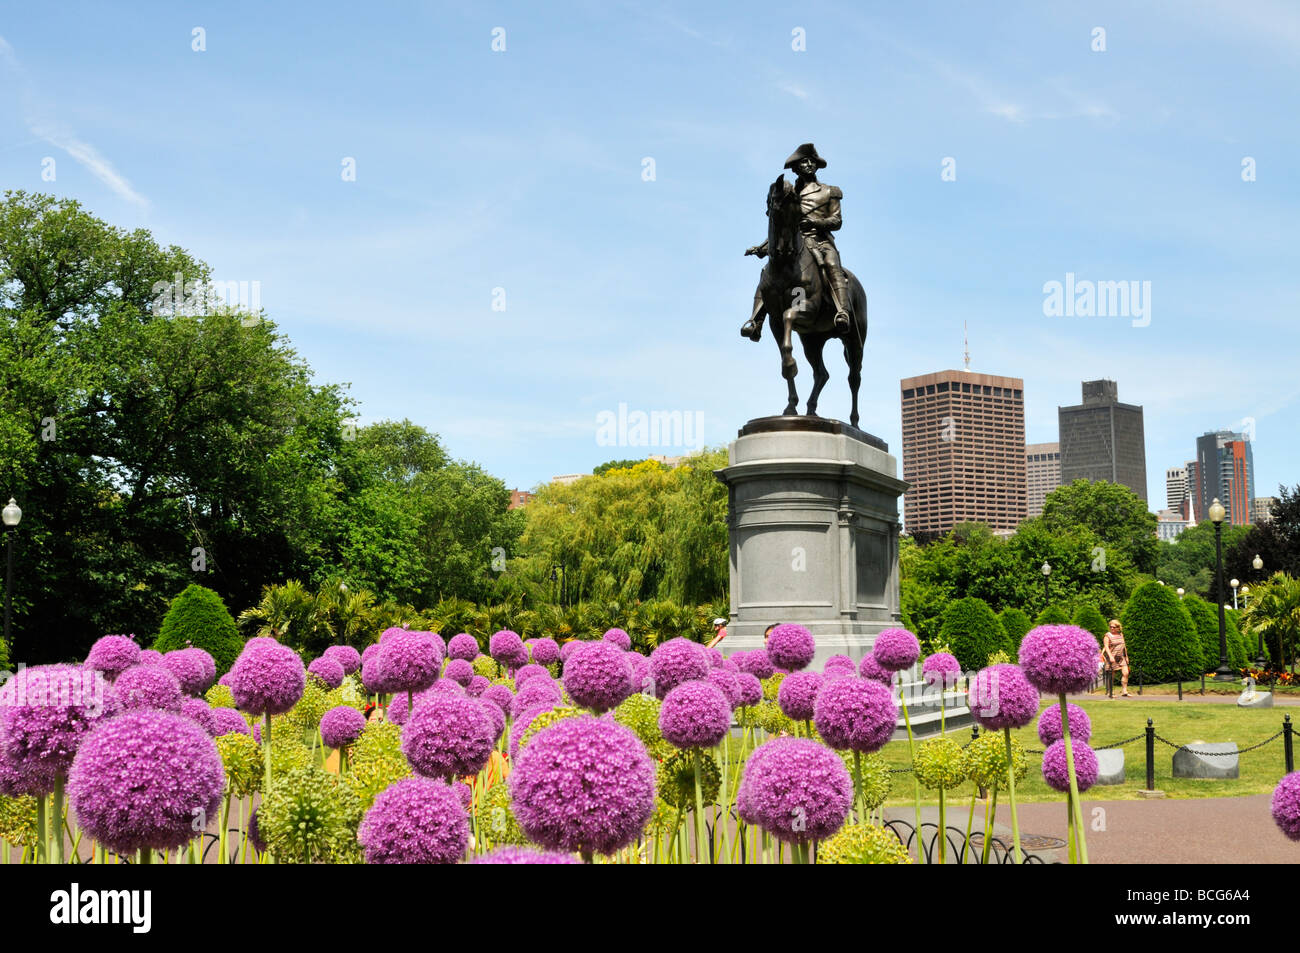 Statue de George Washington dans les jardins publics de Boston Common avec Allium géant en fleurs et sur les toits de la ville en arrière-plan Banque D'Images